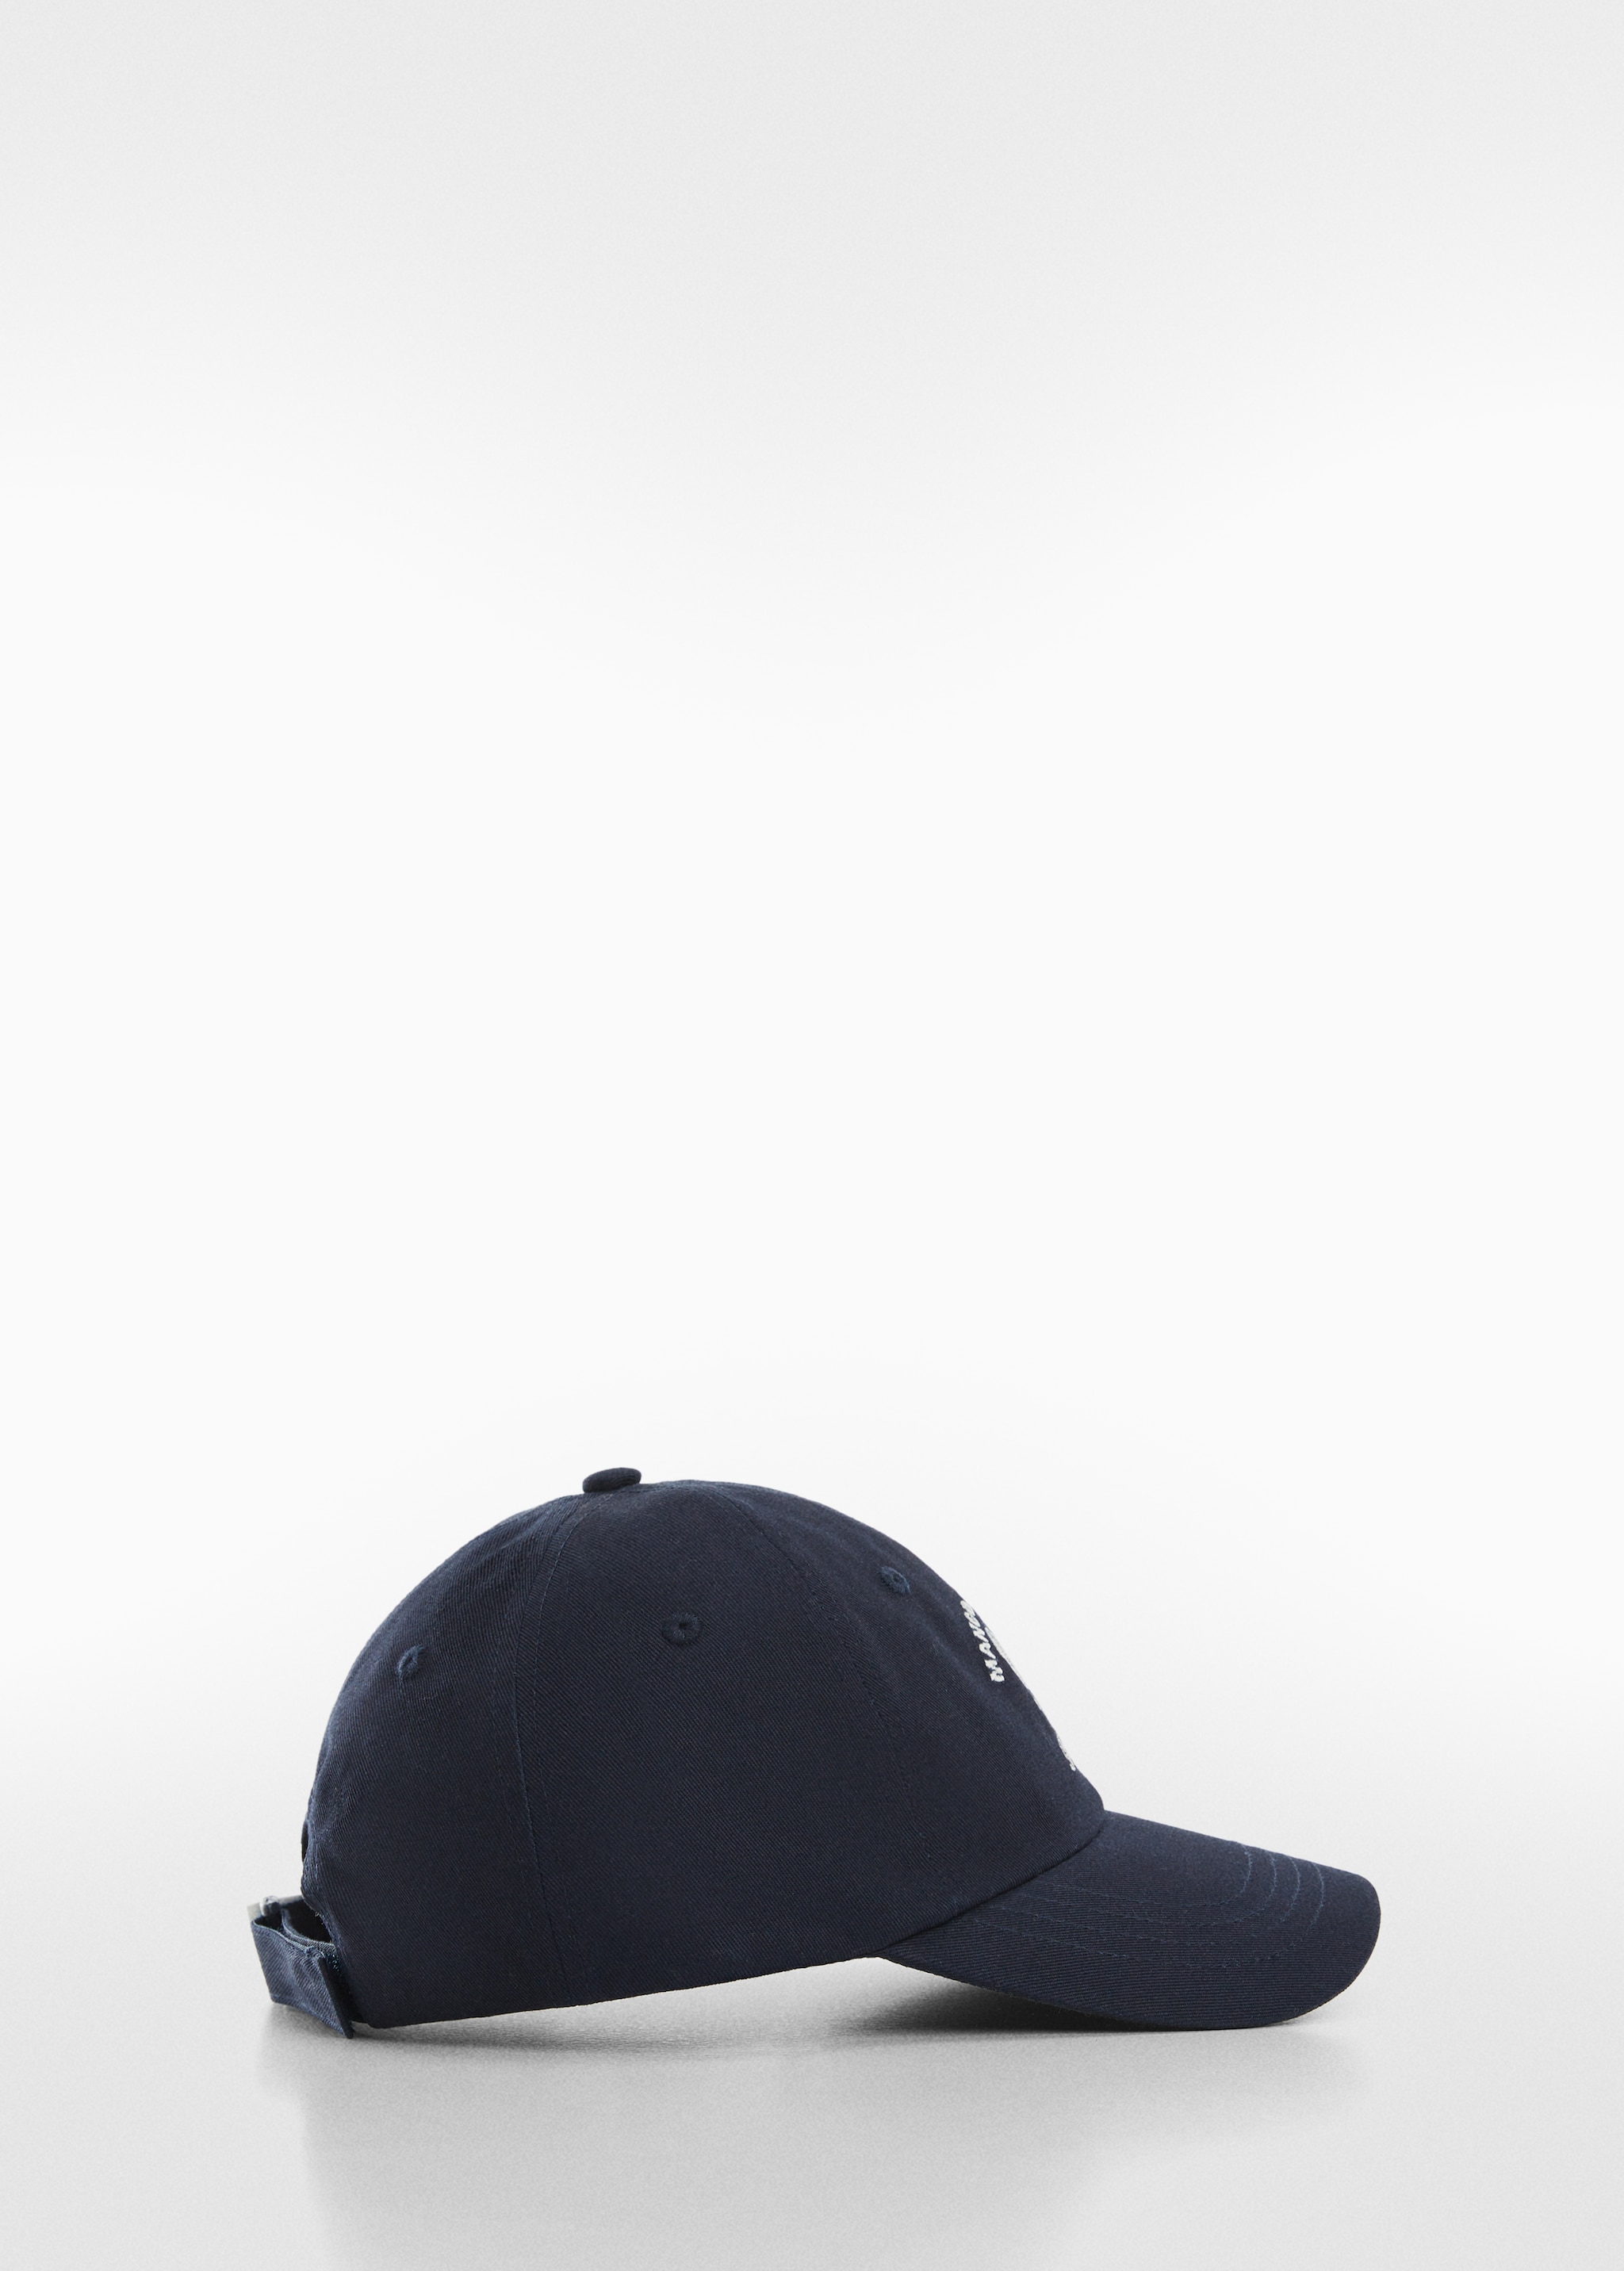 Cappellino logo ricamato - Articolo senza modello